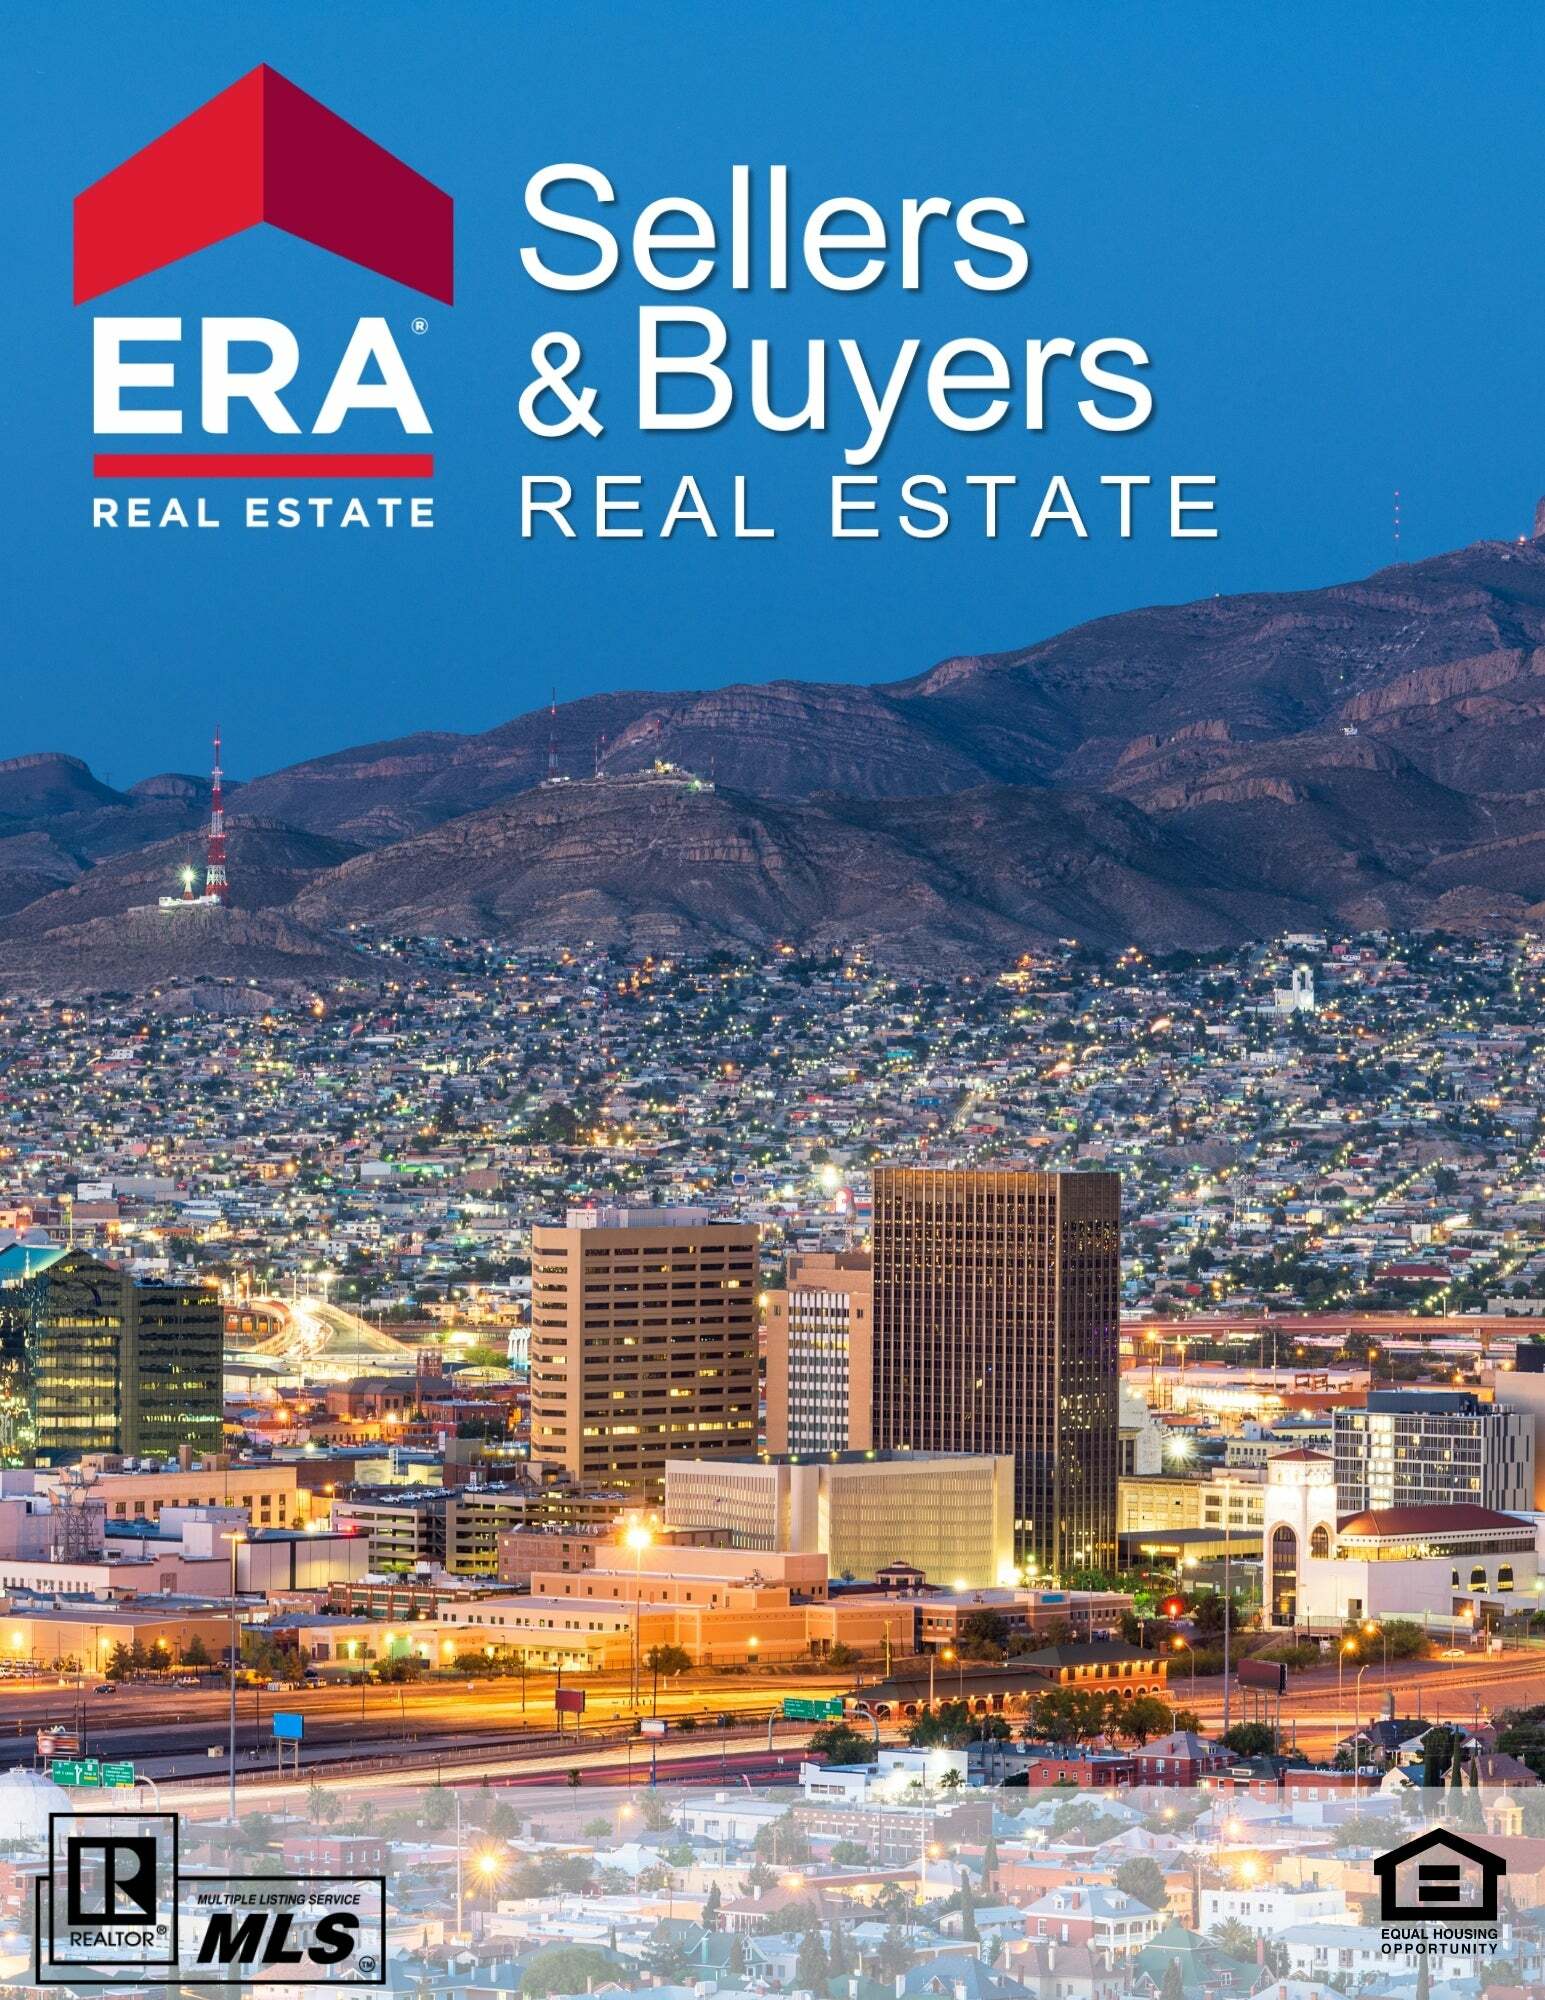 Celeste Palacios,  in El Paso, ERA Sellers & Buyers Real Estate